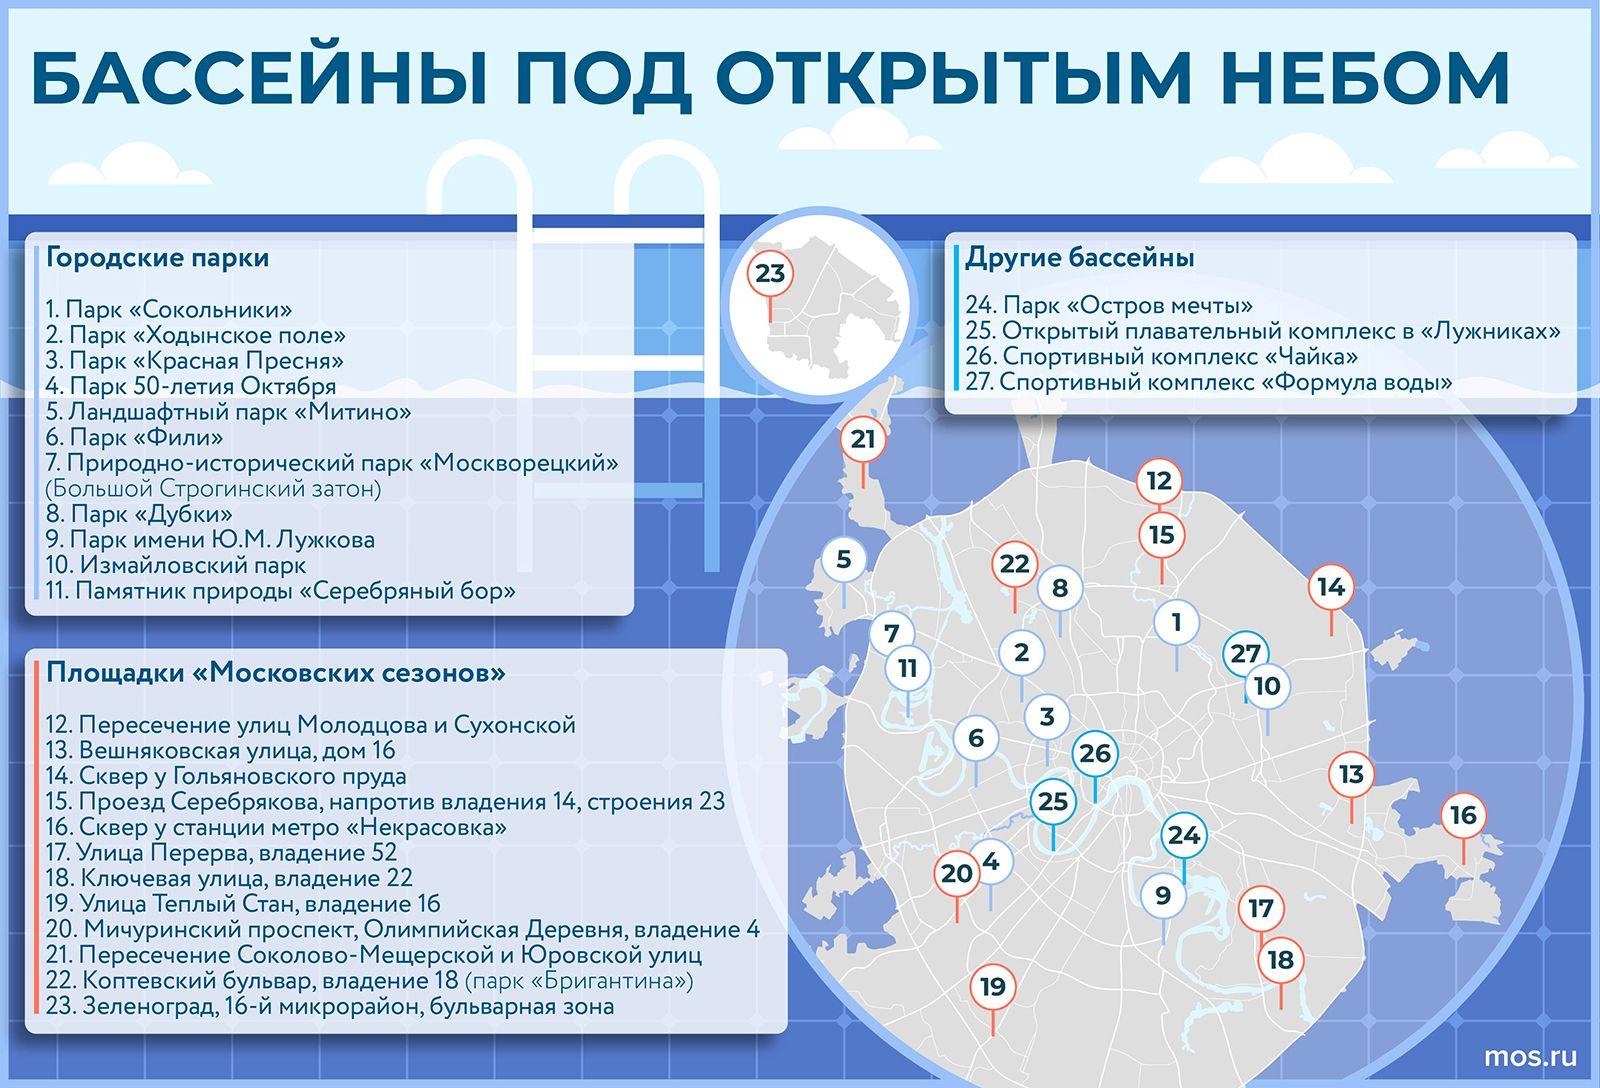 Список бассейнов под открытым небом в Москве